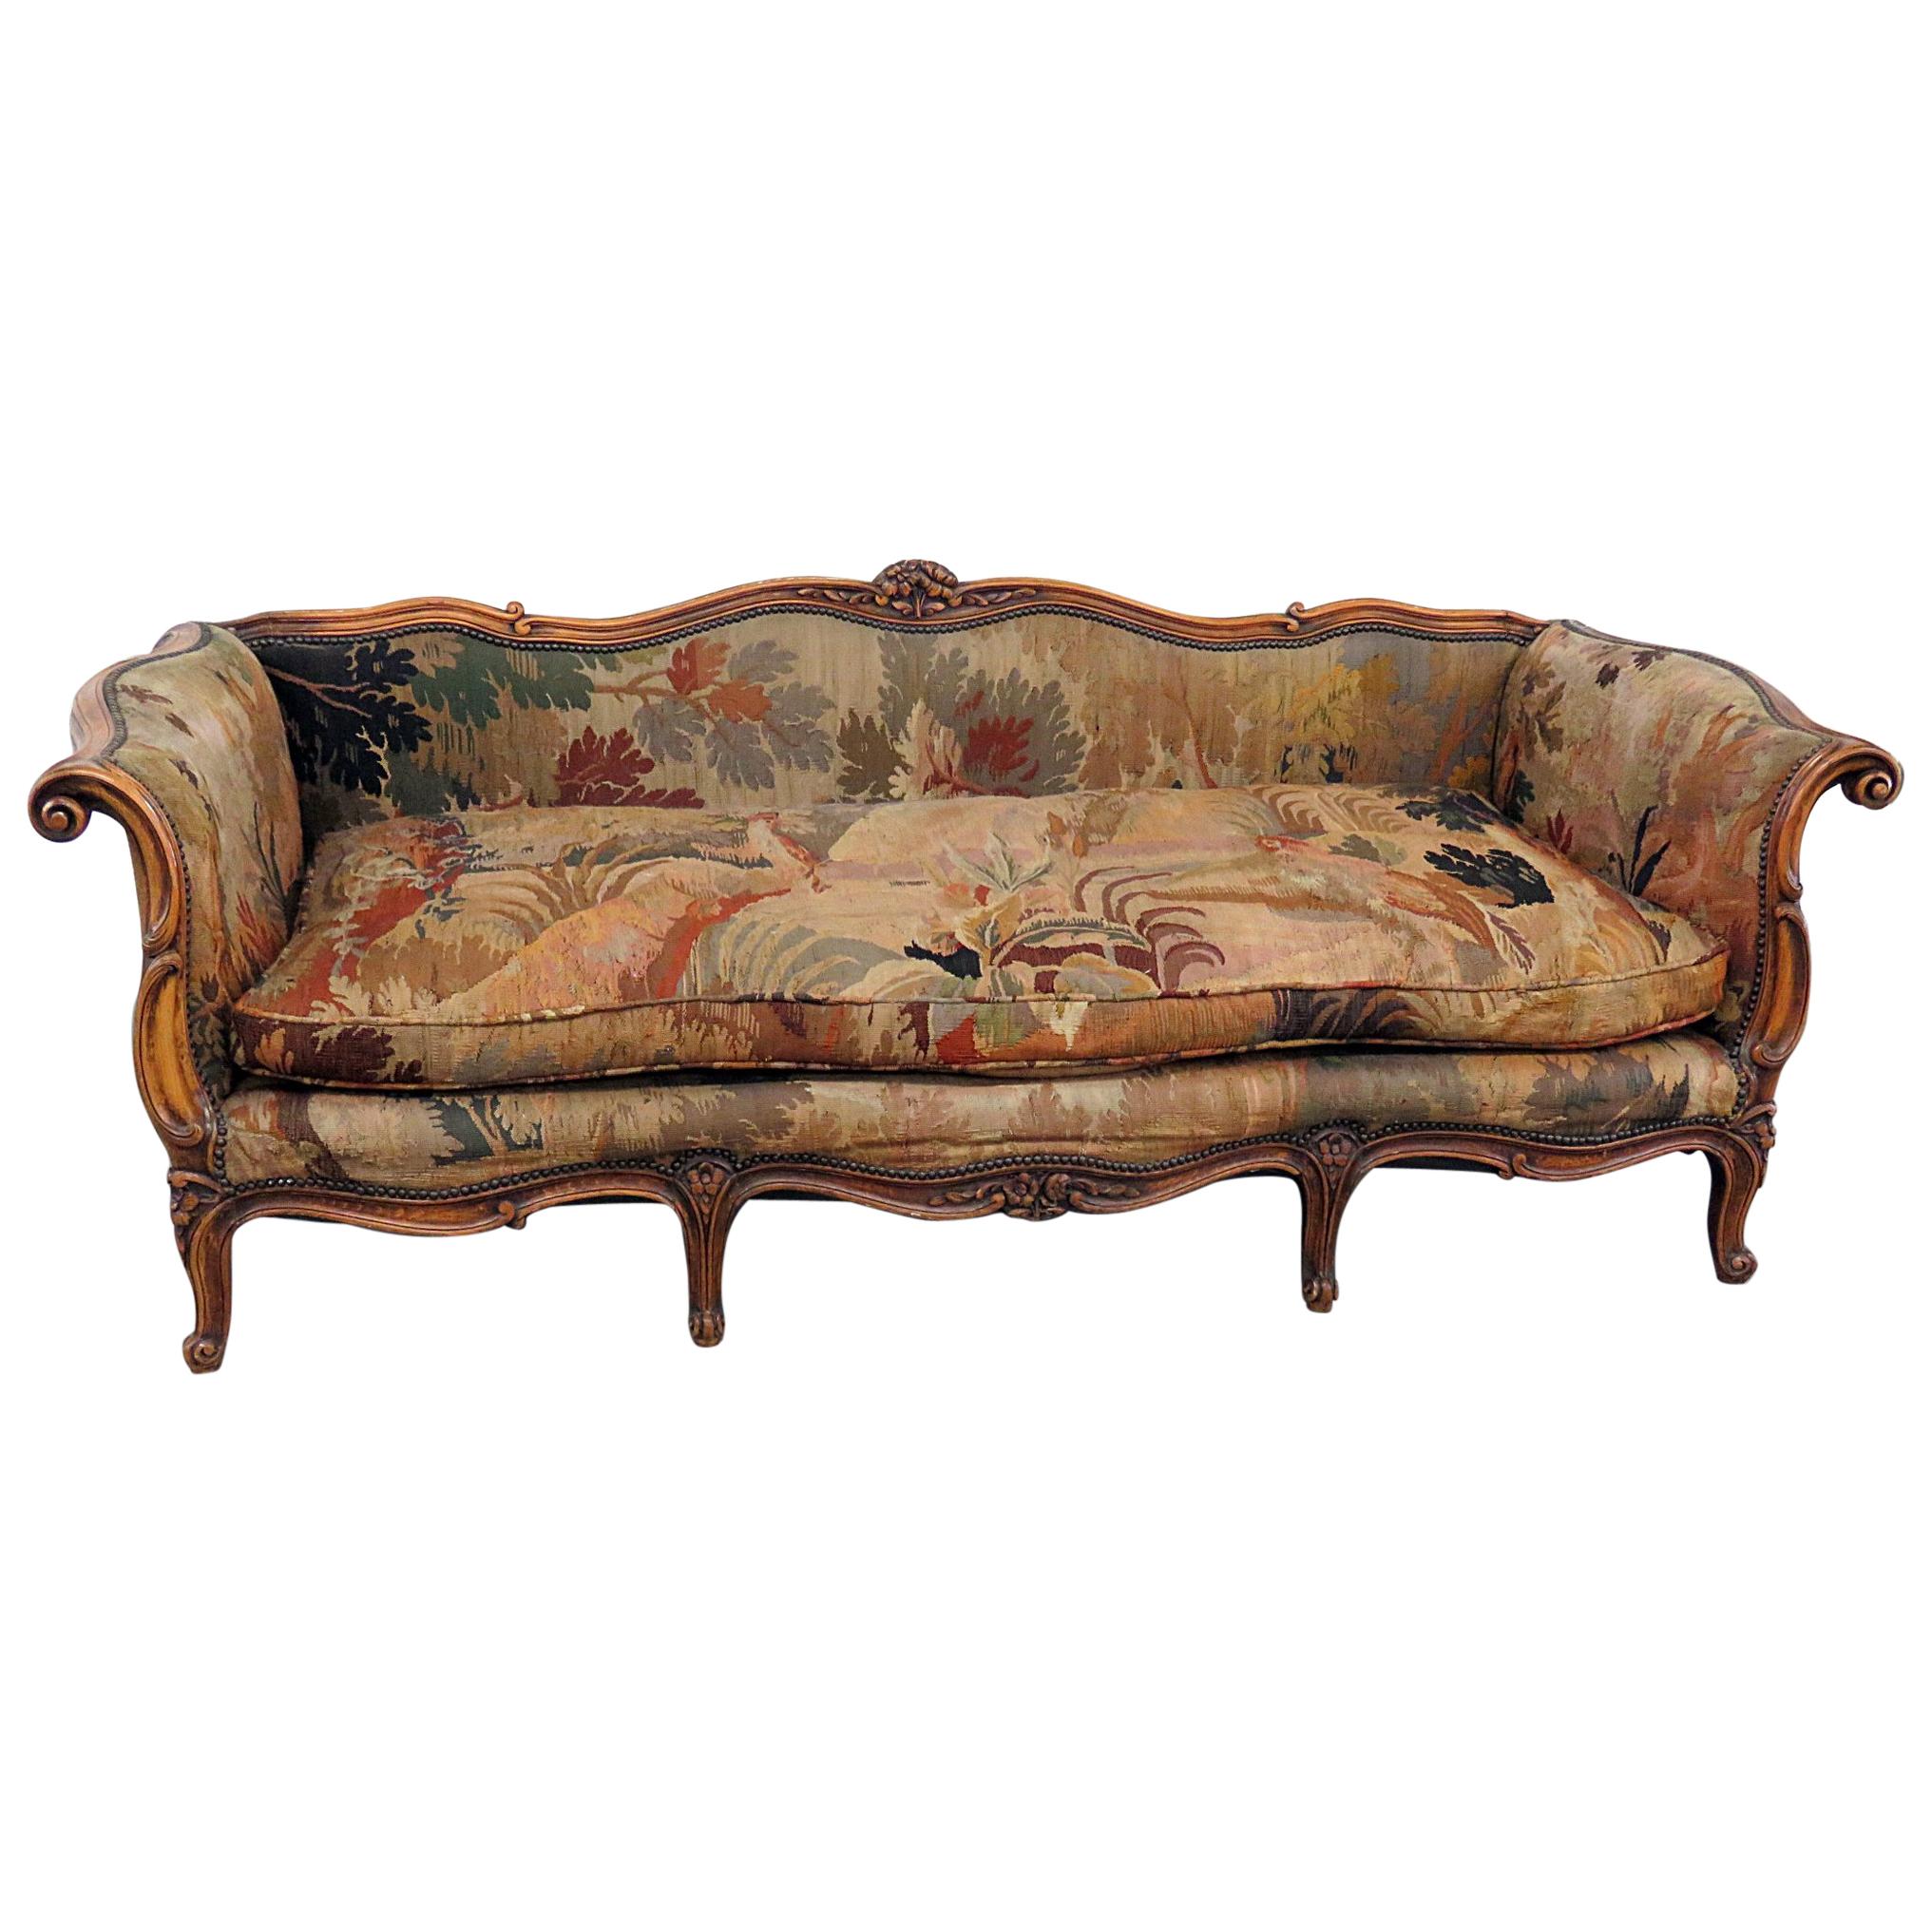 Antique French Regency Style Needlepoint Sofa